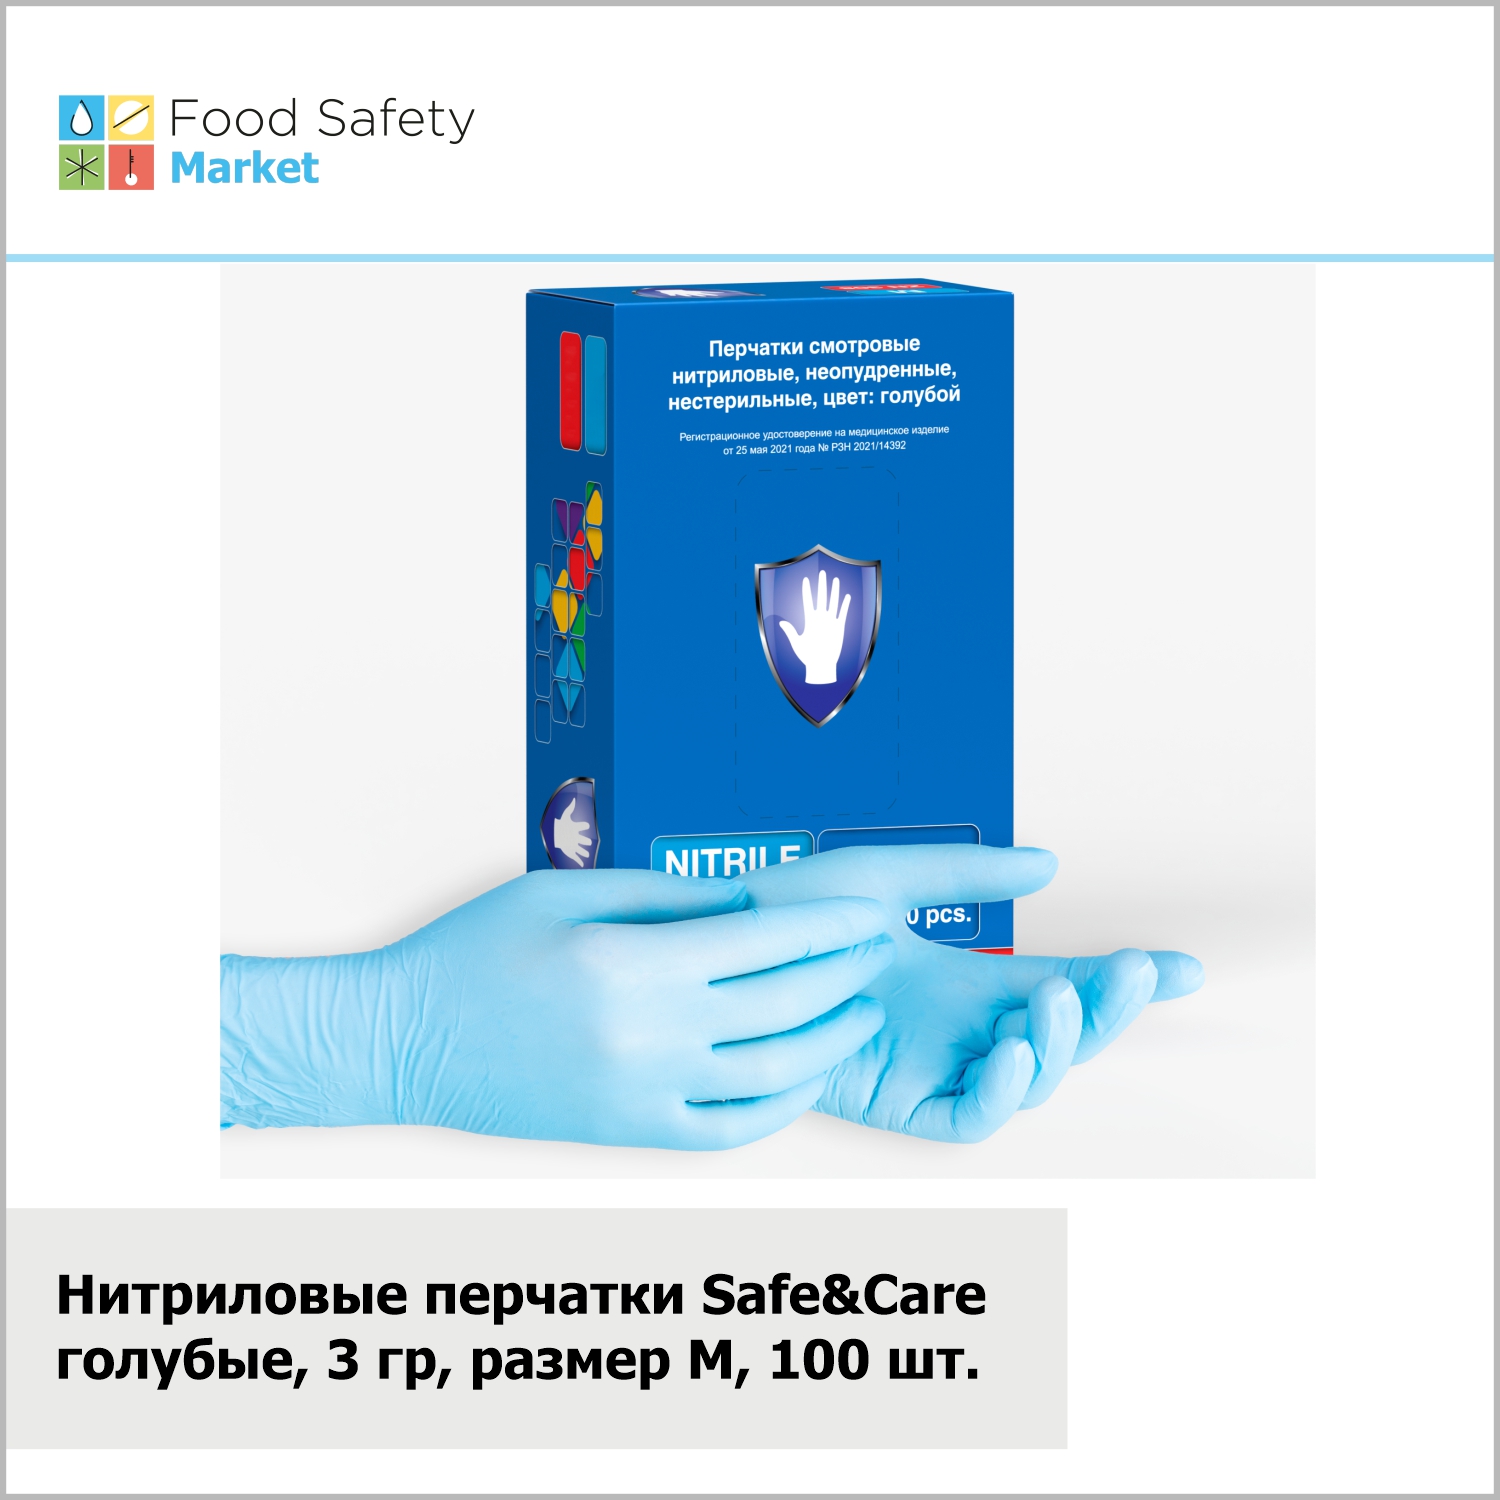 Нитриловые перчатки "Safe&Care" голубые, 3 гр, размер M, 100 шт. в упак.